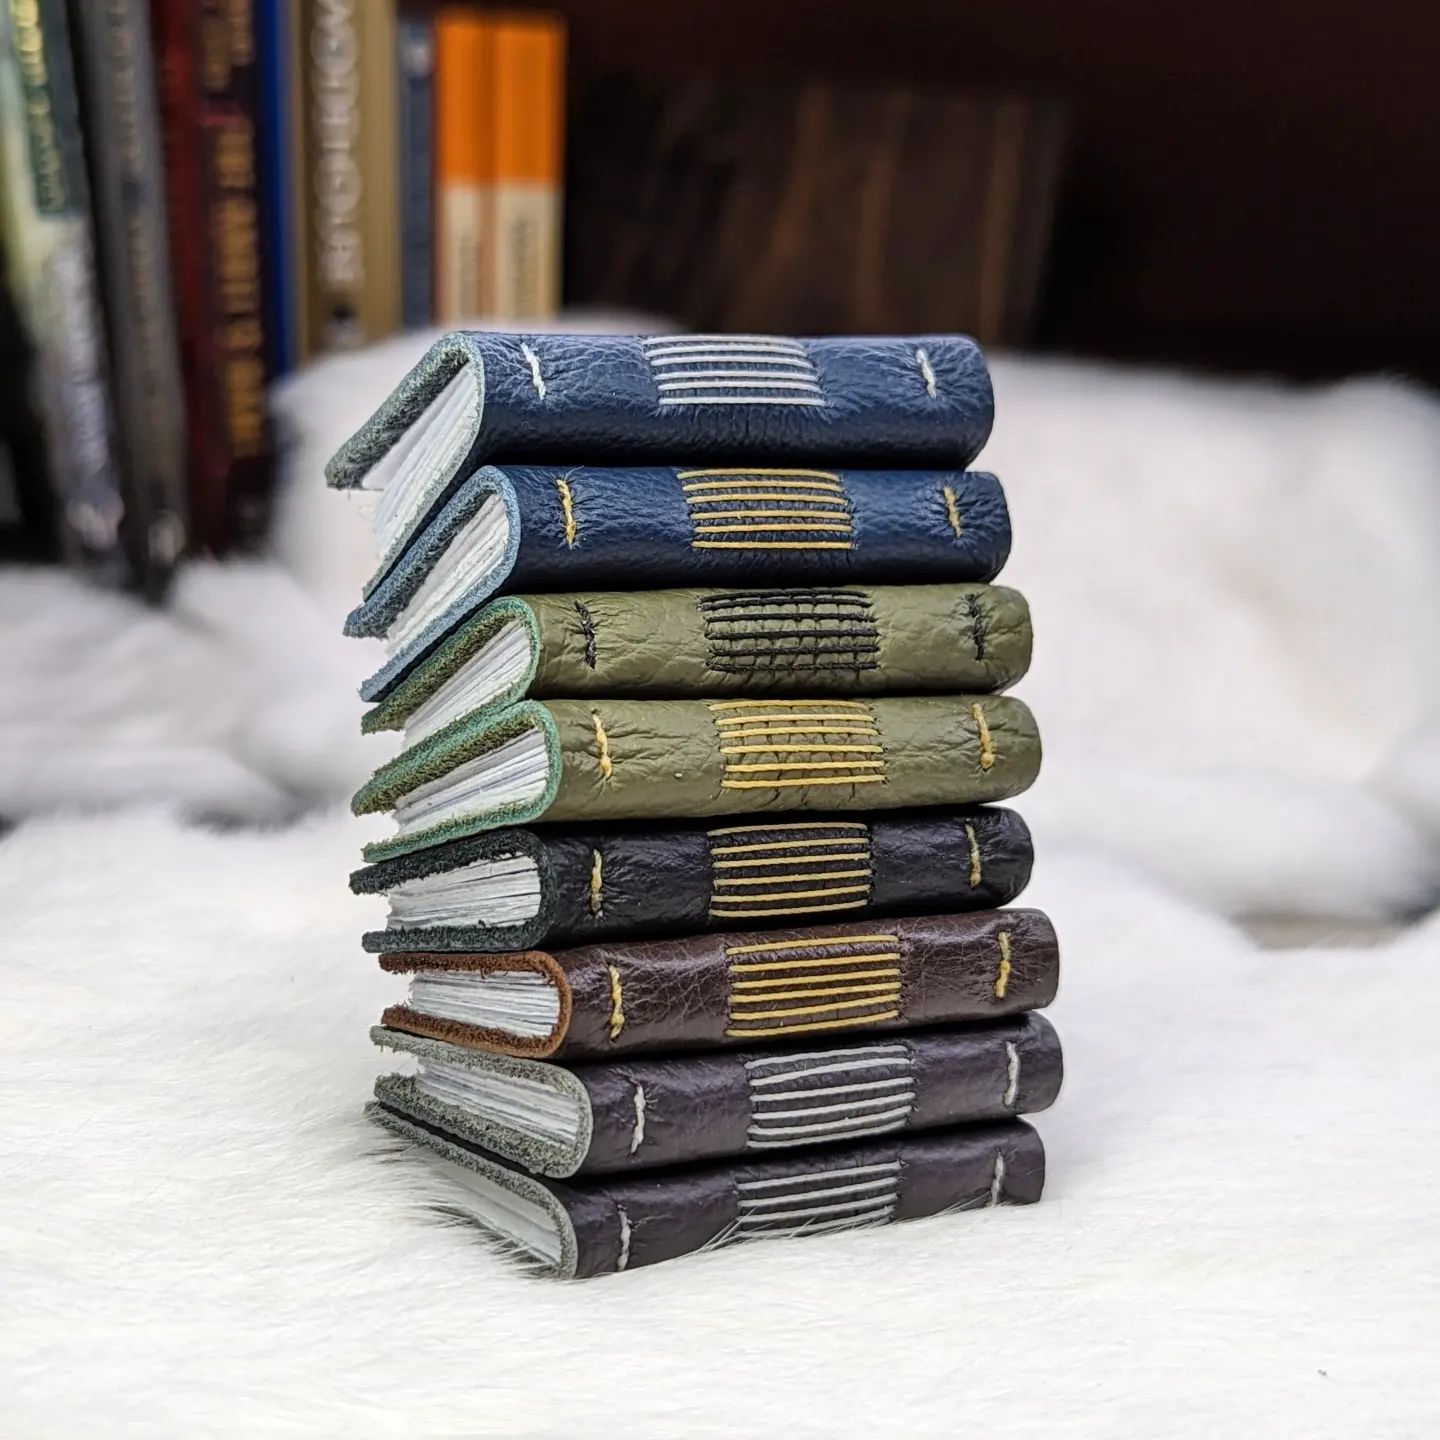 Micro-Mini "Scrap Books" | Long-Stitch Bound Books